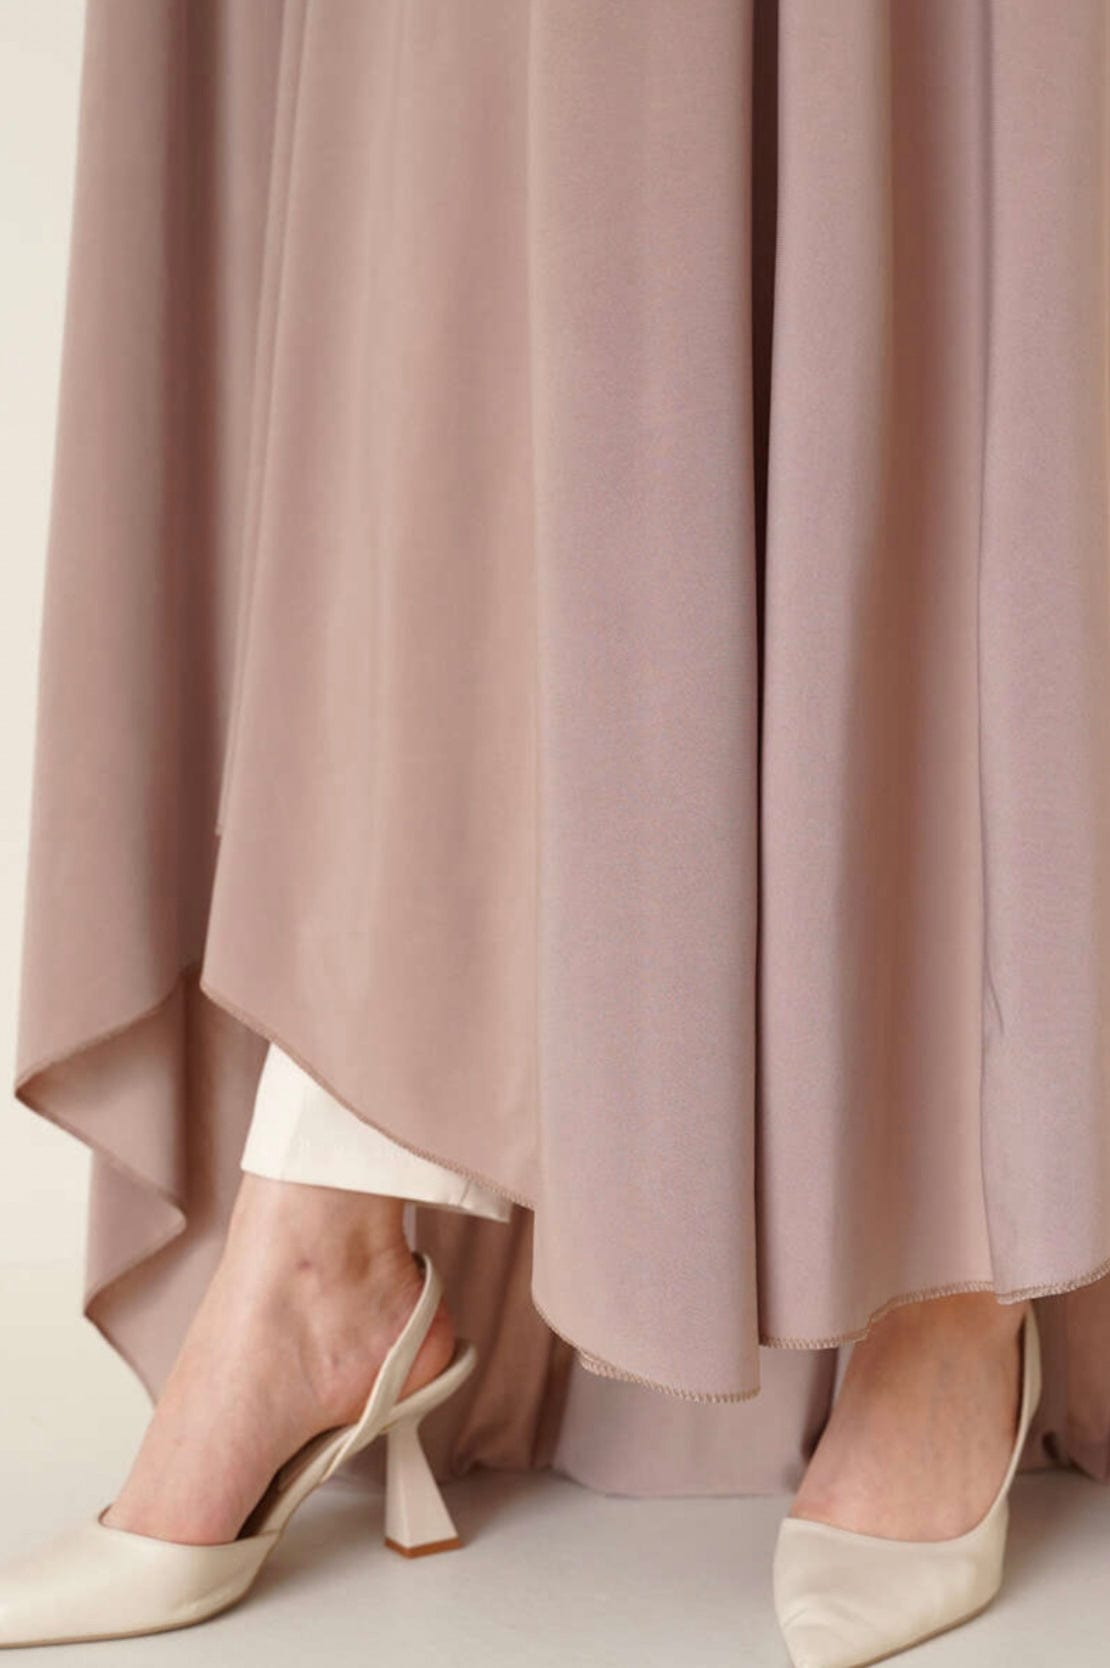 Deen Souvenir Abaya Premium Jersey in Taupe Abaya Premium in Taupe - Ein Must-Have für modebewusste Frauen